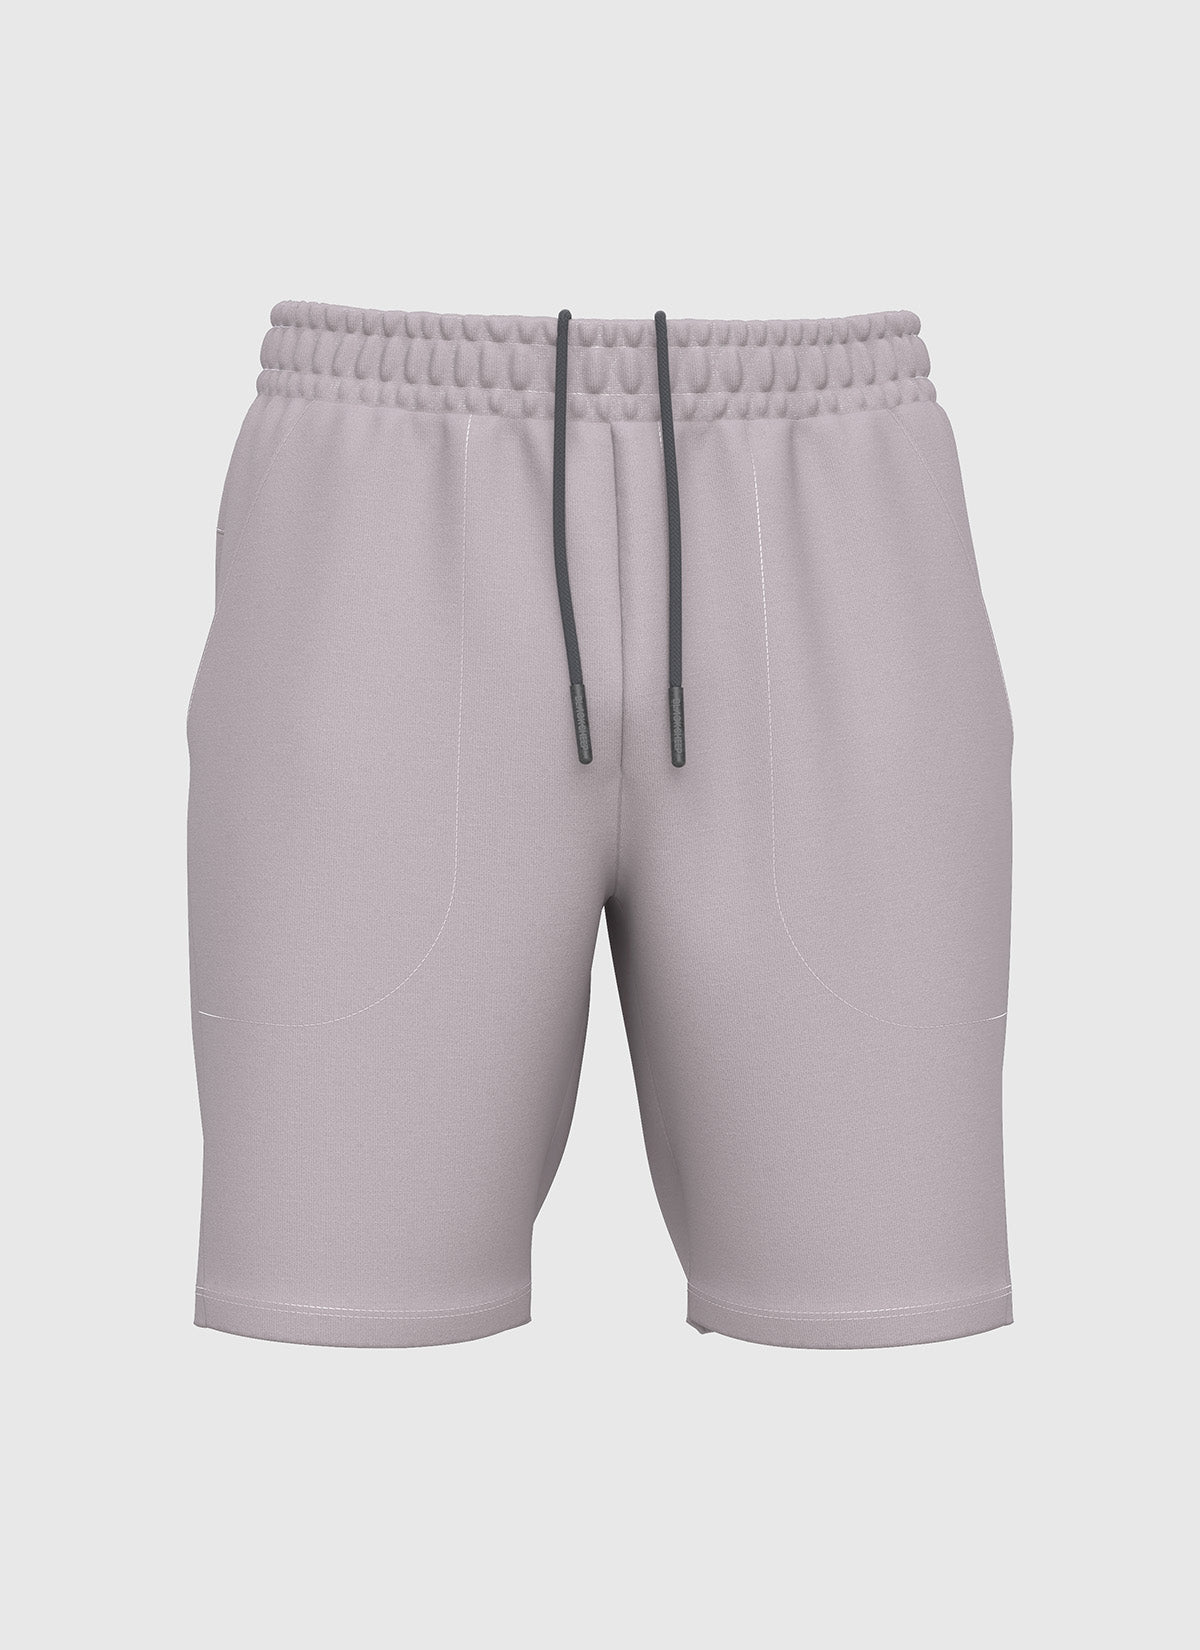 Men's Flex 9" Gym Short - Grey